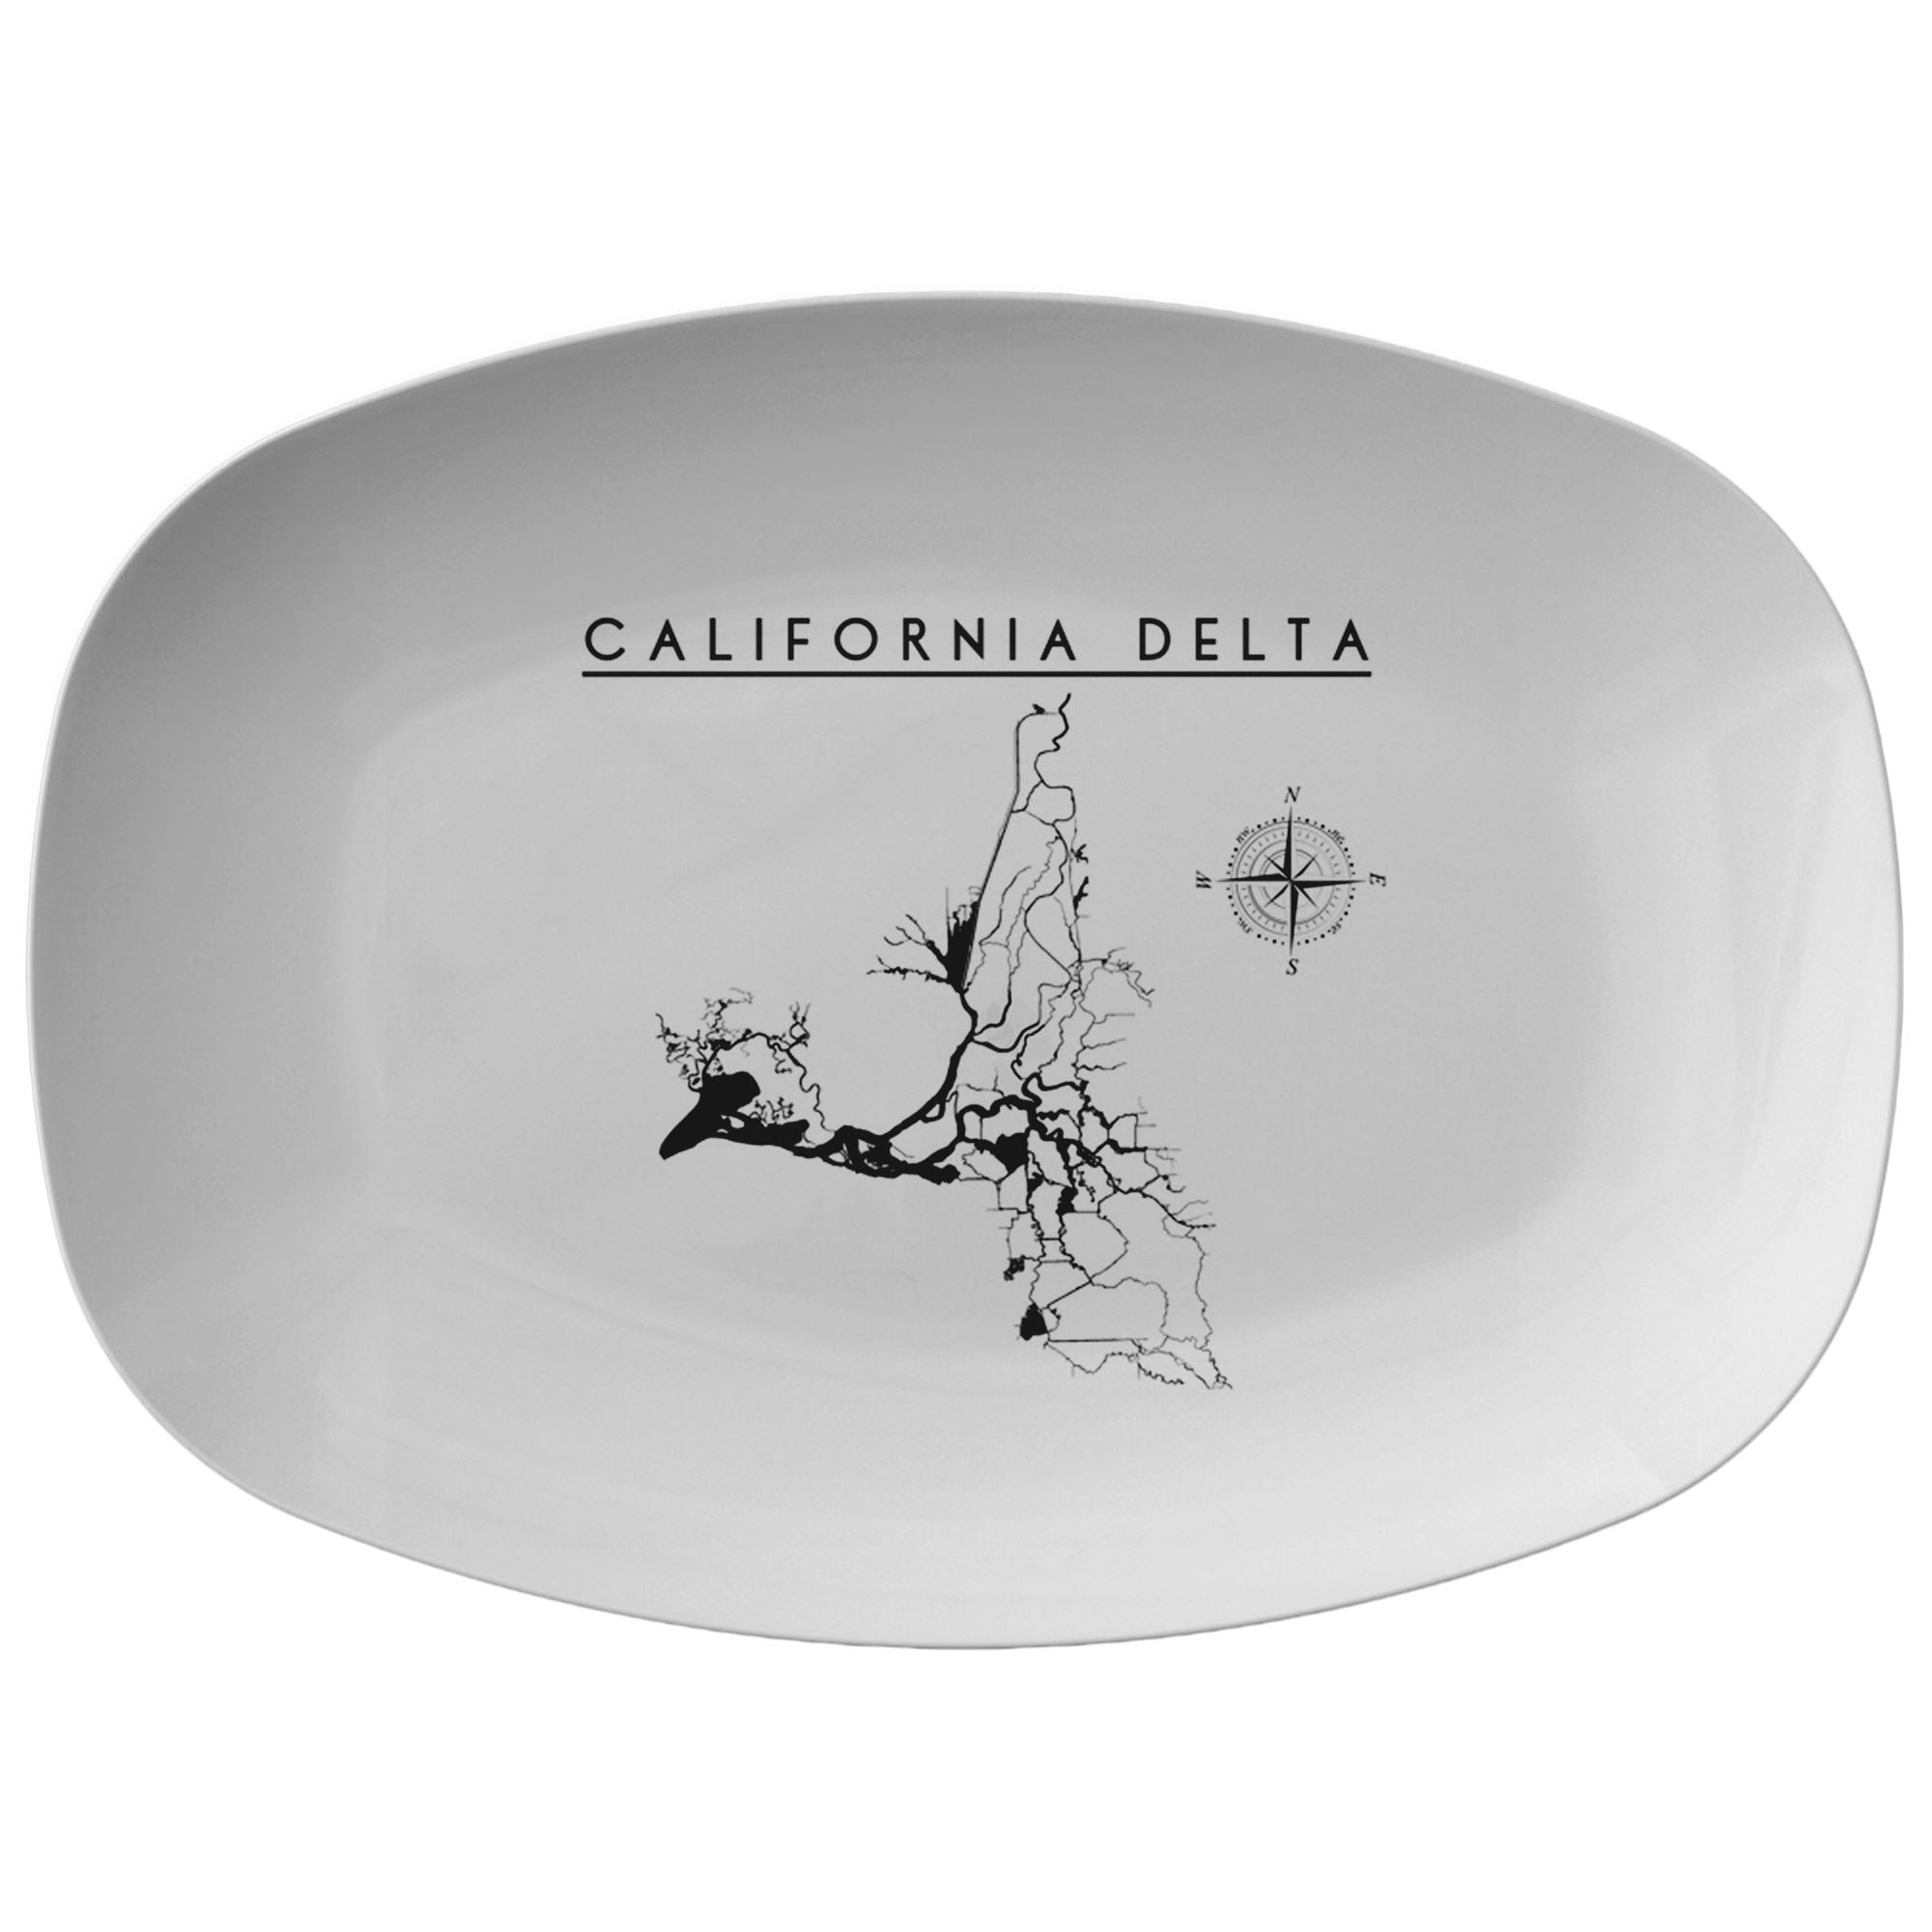 California Delta Serving Platter - Houseboat Kings